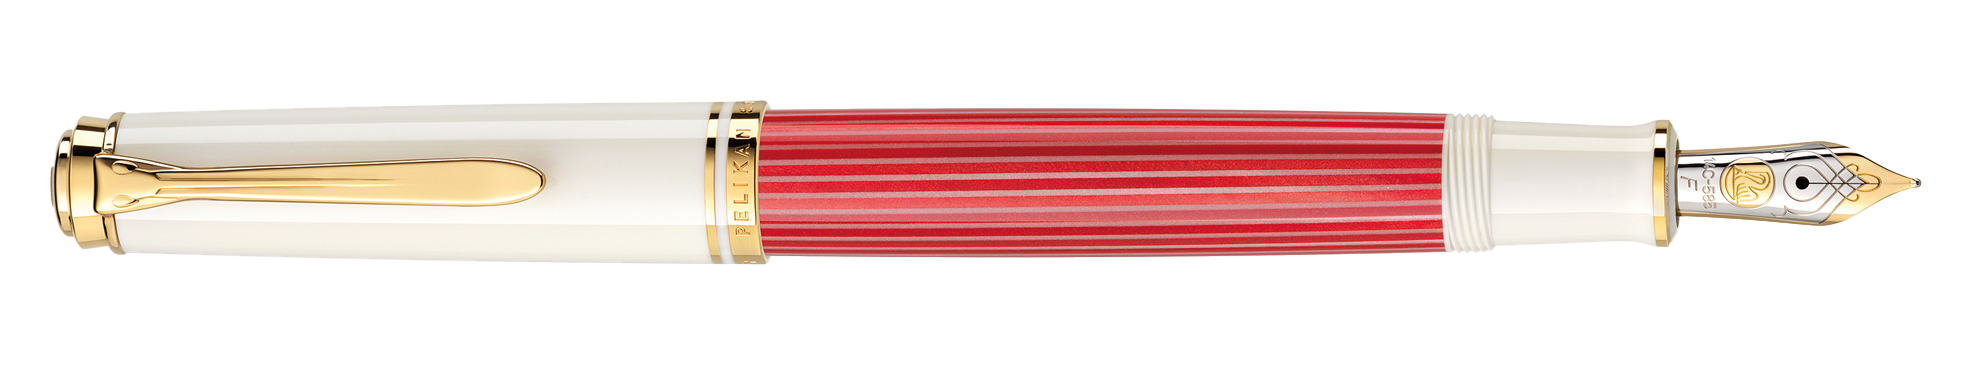 Souverän® 600 Rot-Weiß